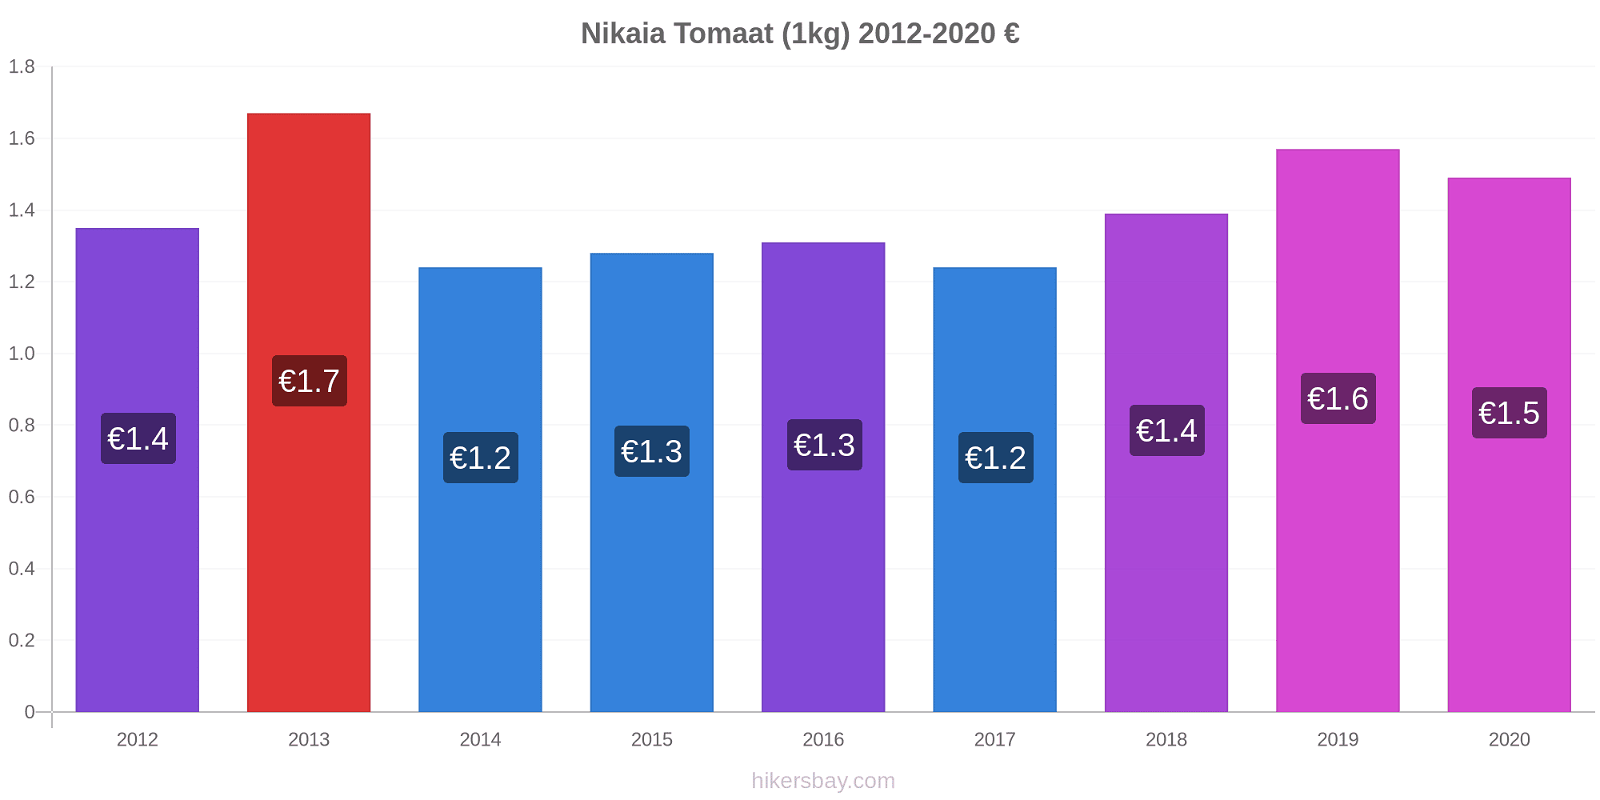 Nikaia prijswijzigingen Tomaat (1kg) hikersbay.com